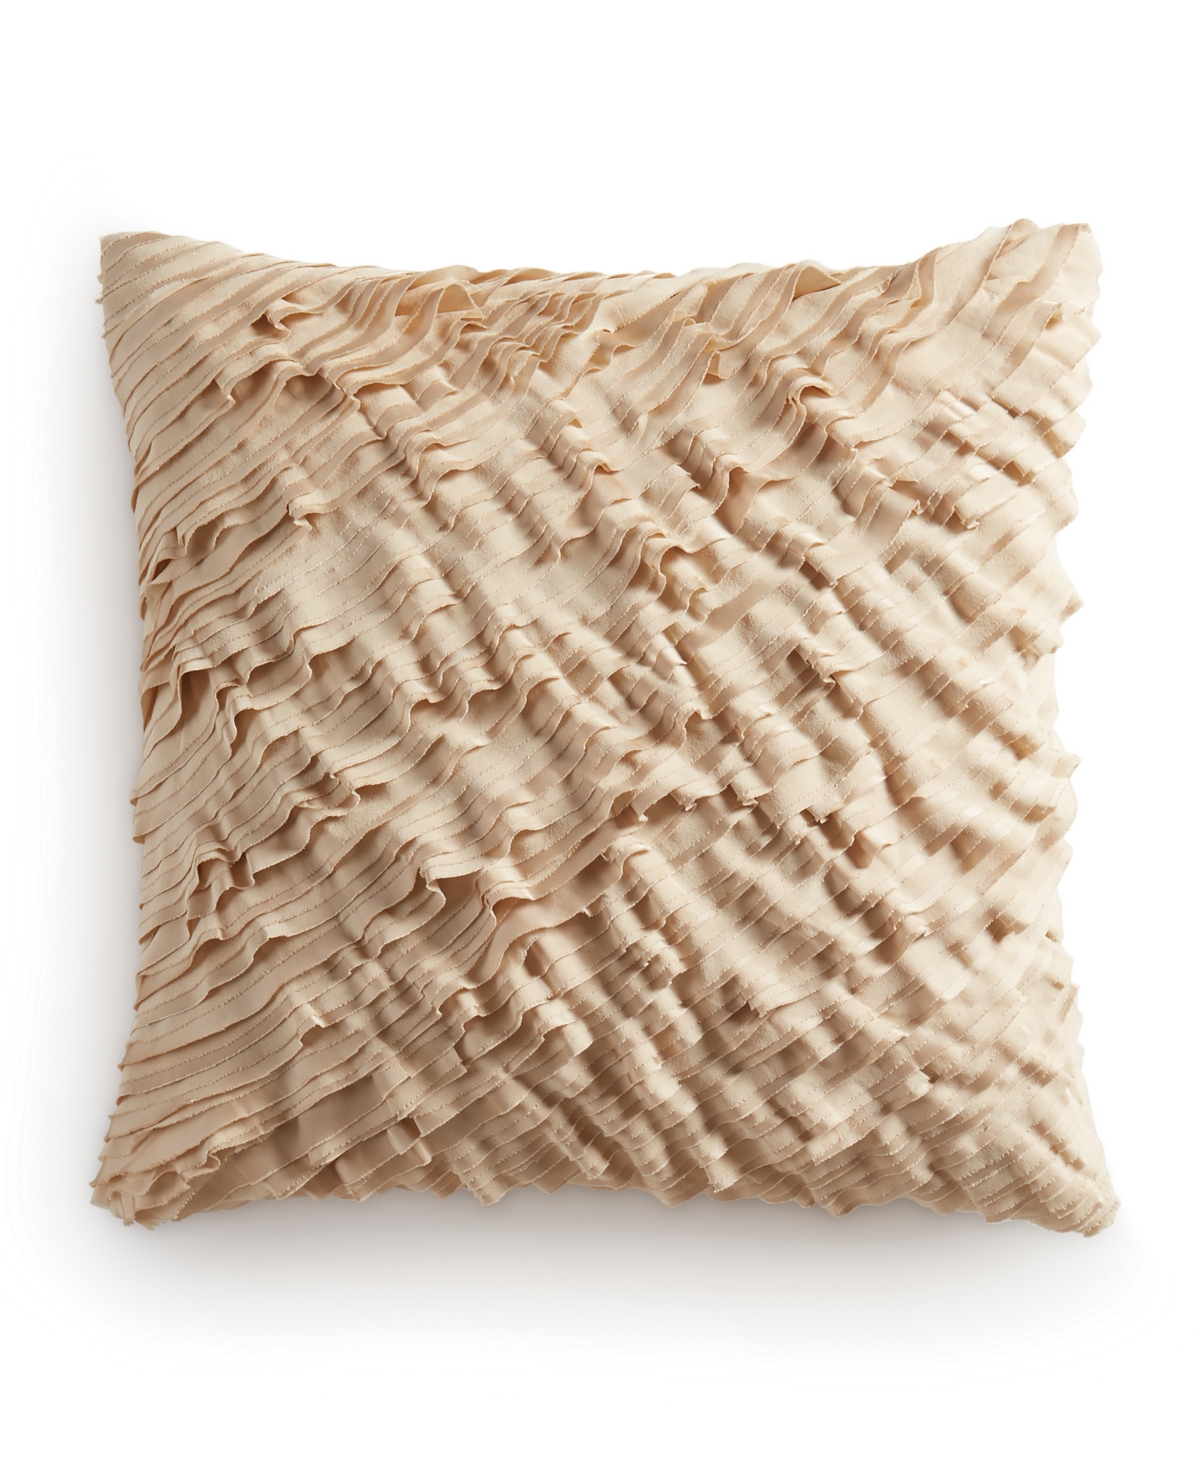 Donna Karan Home Ruffle Decorative Pillow, 18" X 18" In Gold